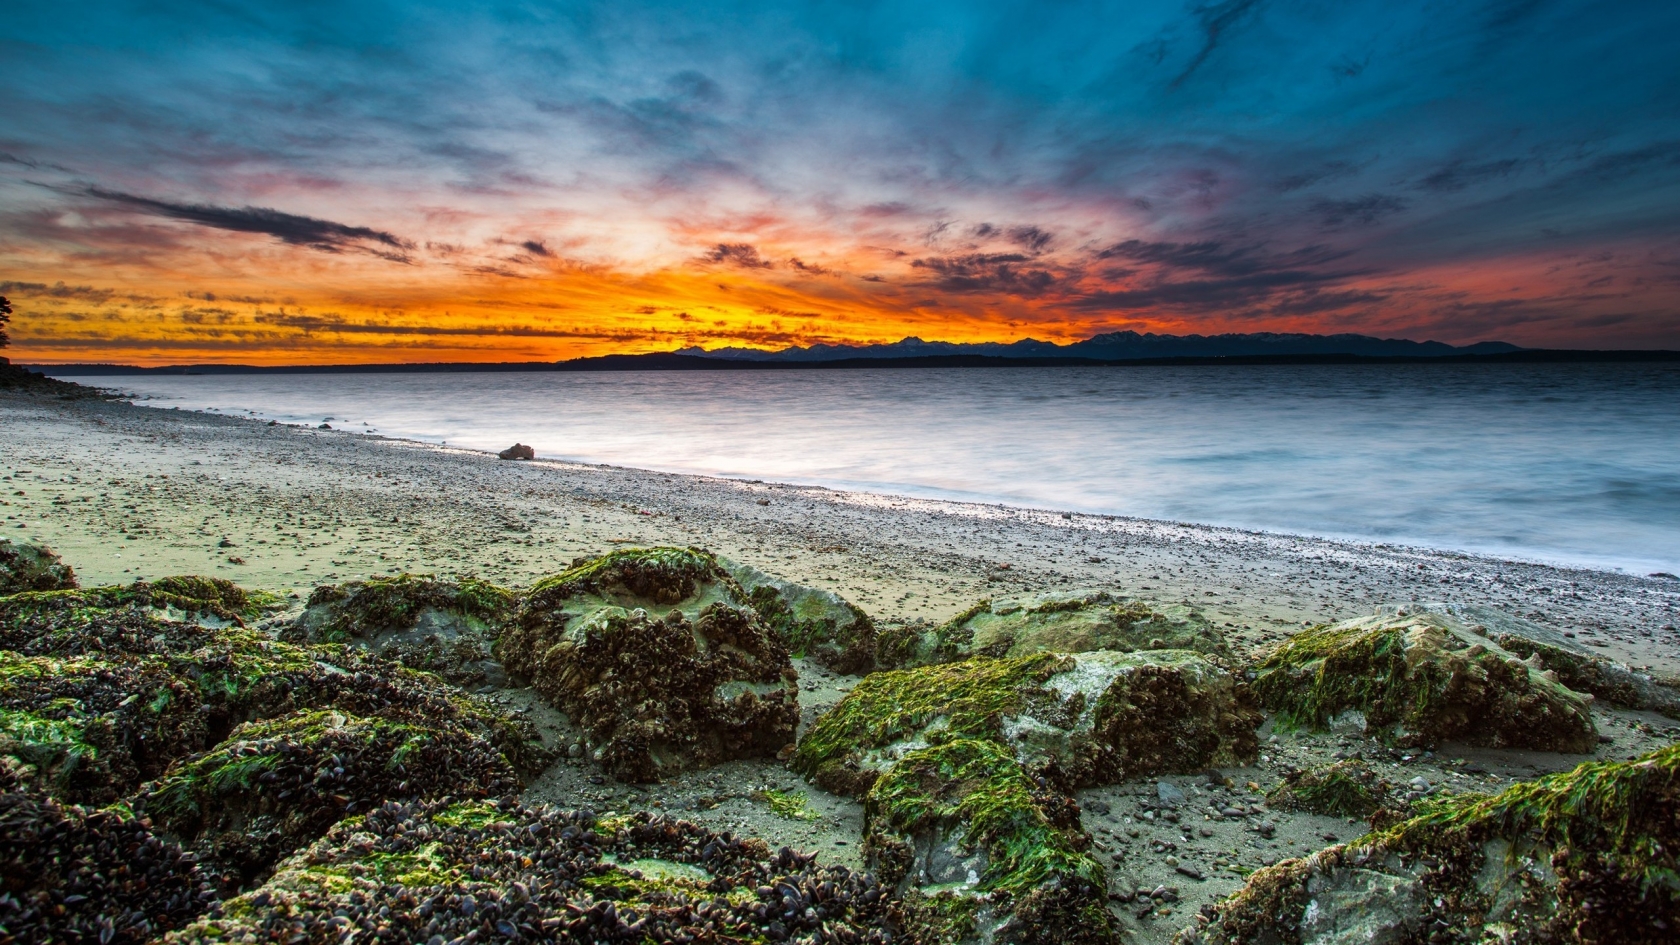 Virgin Beach Sunset for 1680 x 945 HDTV resolution